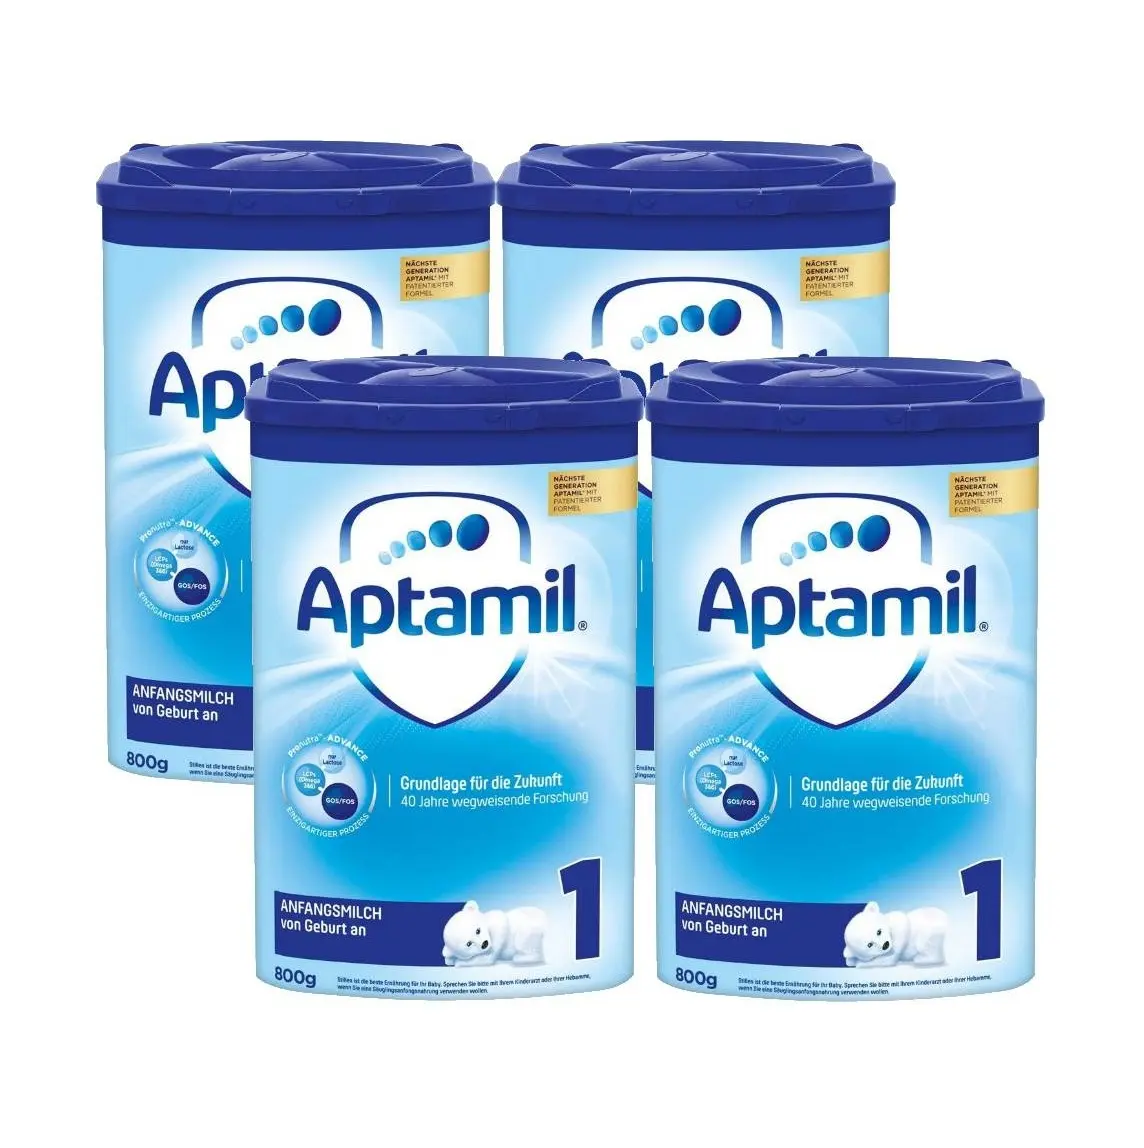 Оригинальный детский молочный порошок Aptamil доступен здесь по лучшей оптовой цене в большом количестве